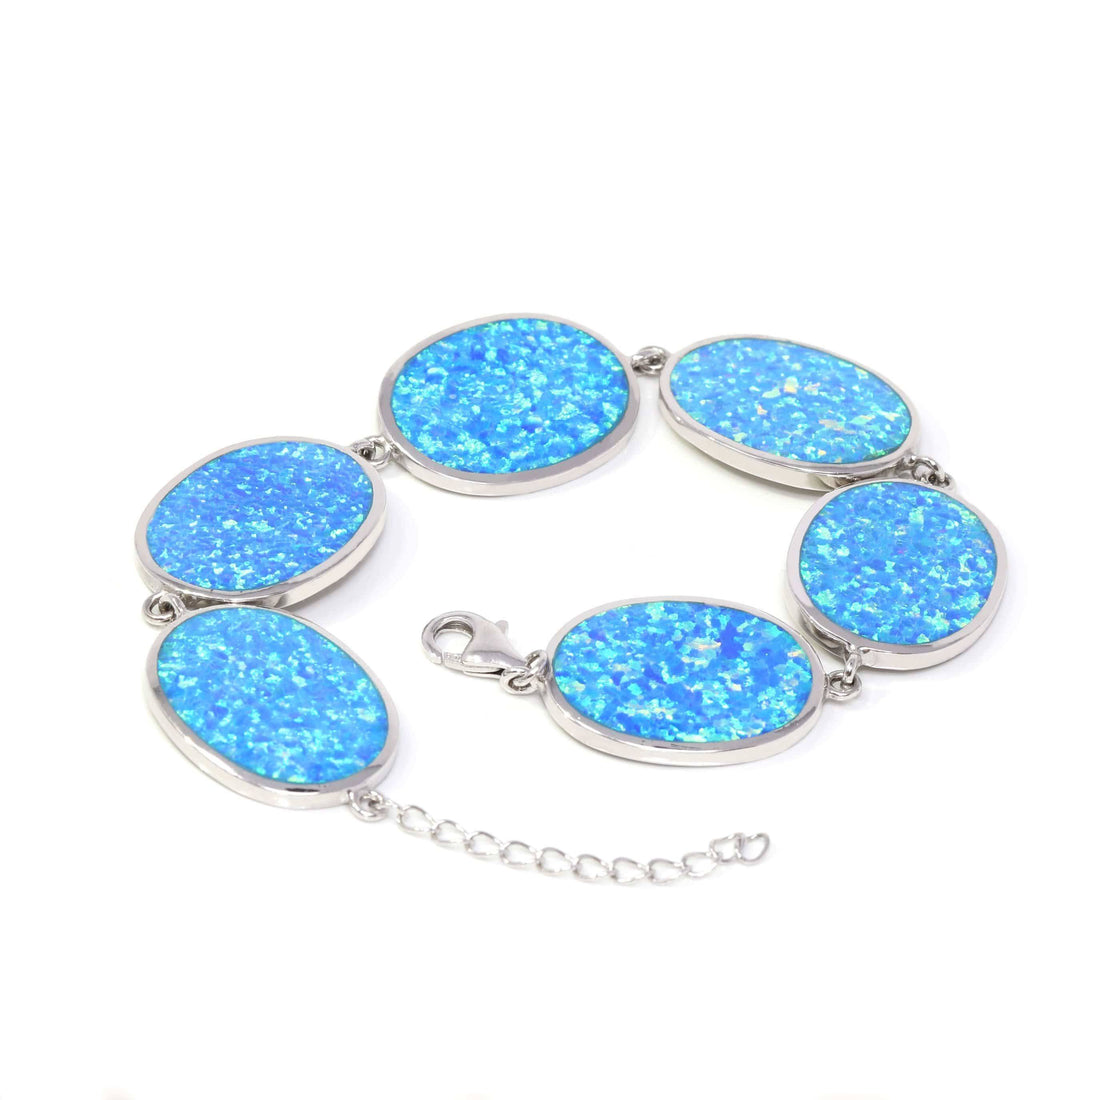 Baikalla Jewelry "Ann" Sterling Silver Lab-Created Oval Opal Bracelet